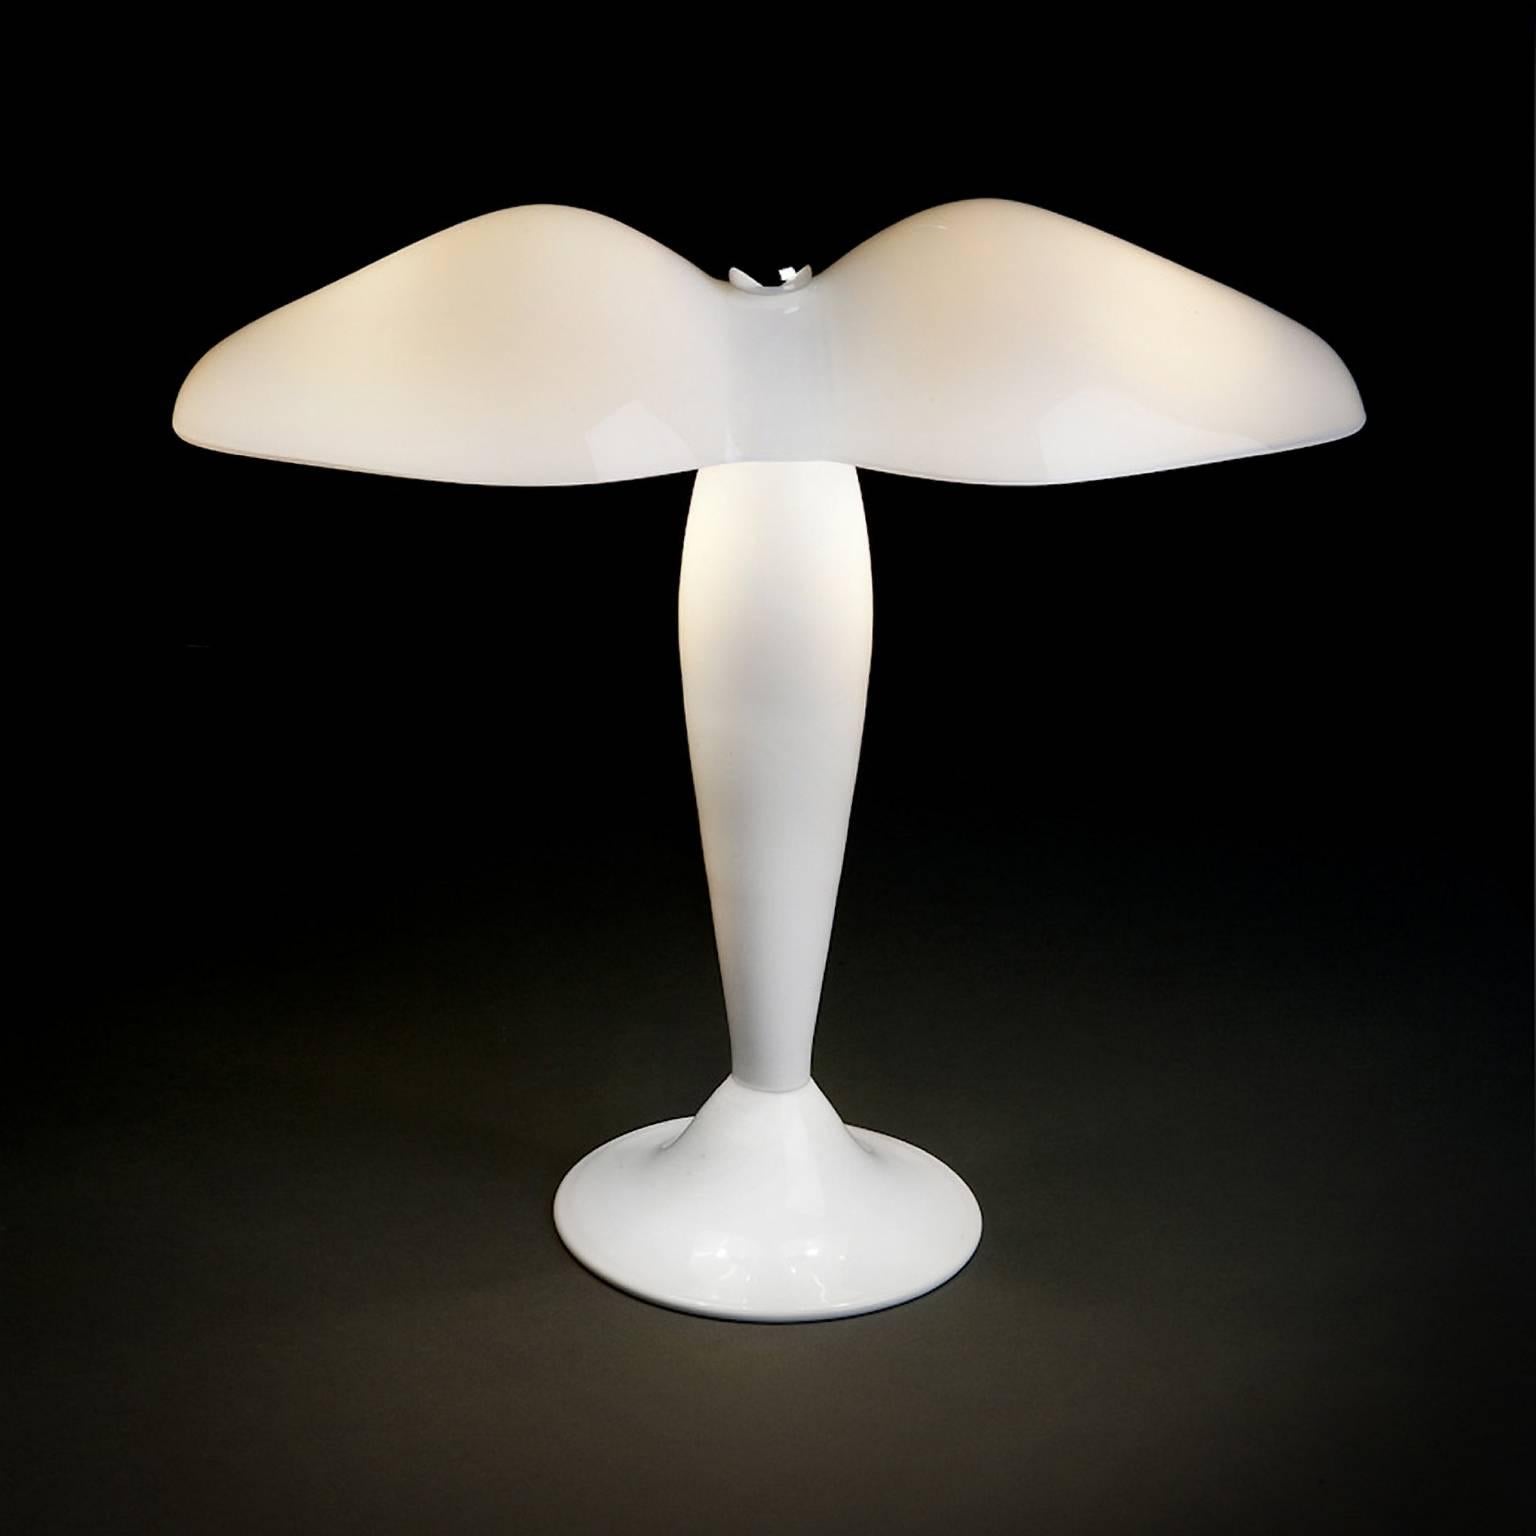 Lampe de table en verre de Murano blanc laiteux soufflé à la bouche et fini à la main, conçue en 1994 par Carlo Moretti. 

2 ampoules à incandescence de 40 watts, 2 douilles écolampes de 28 watts E14.


Carlo Moretti : Une usine